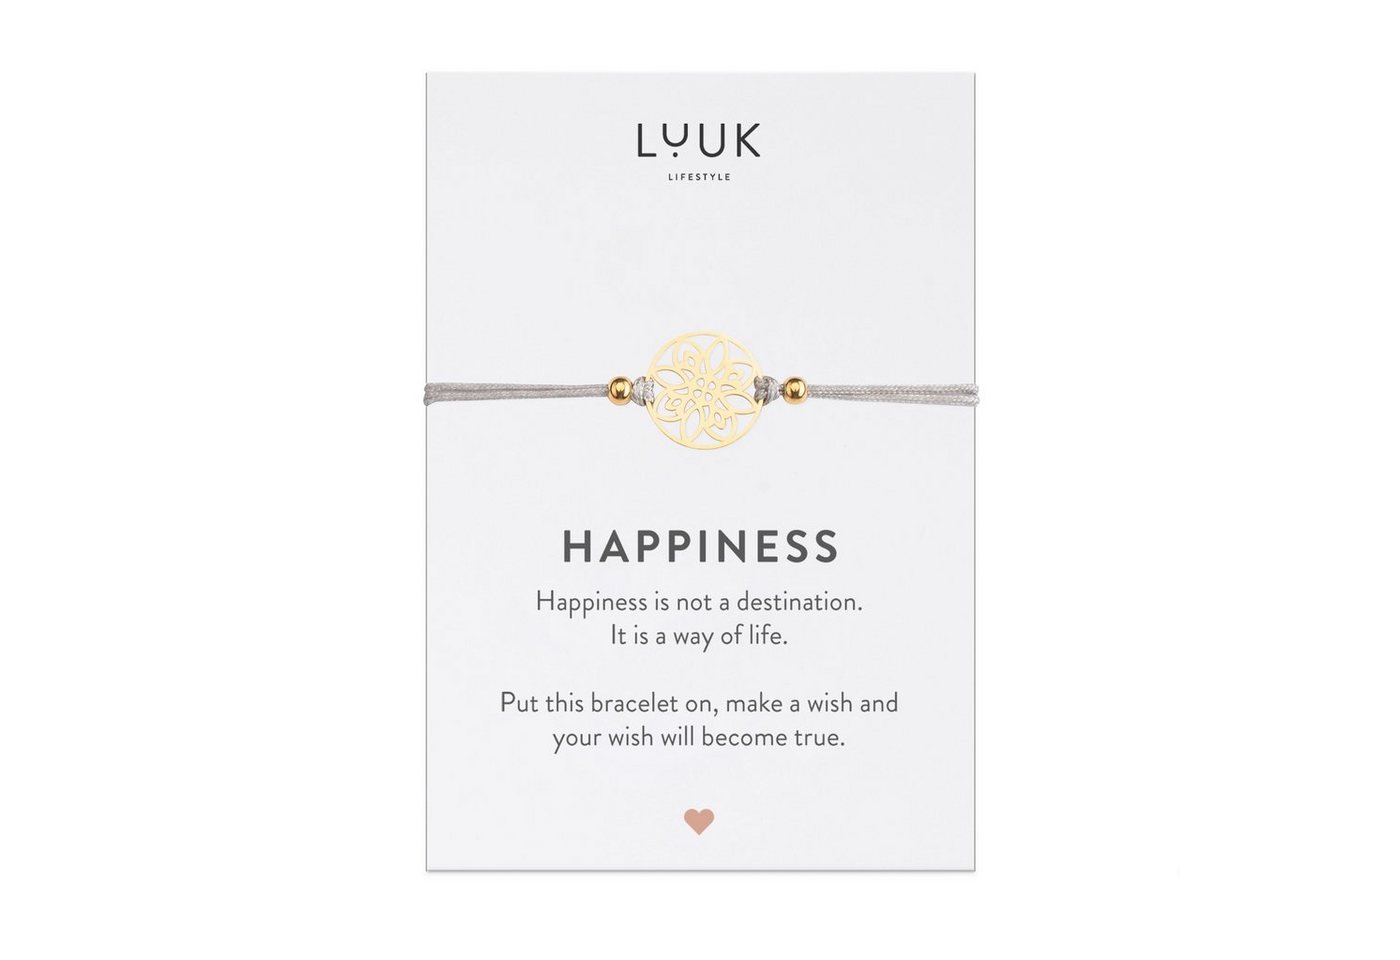 LUUK LIFESTYLE Freundschaftsarmband Blume, handmade, mit Happiness Spruchkarte von LUUK LIFESTYLE